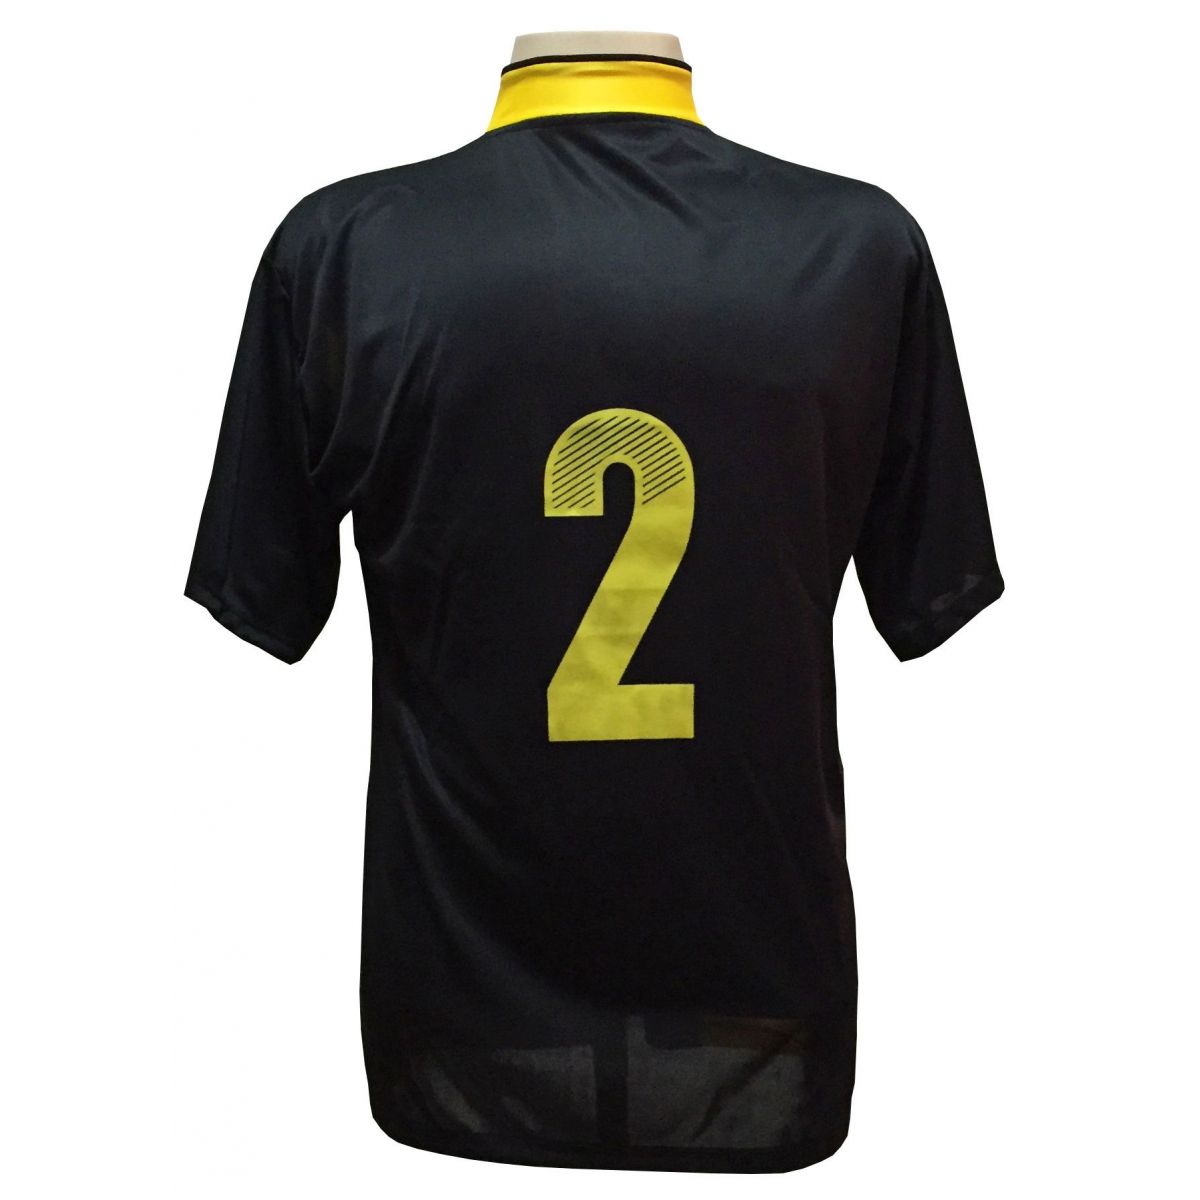 Uniforme Esportivo Completo modelo Suécia 14+1 (14 camisas Preto/Amarelo + 14 calções Madrid Preto + 14 pares de meiões Amarelos + 1 conjunto de goleiro) + Brindes